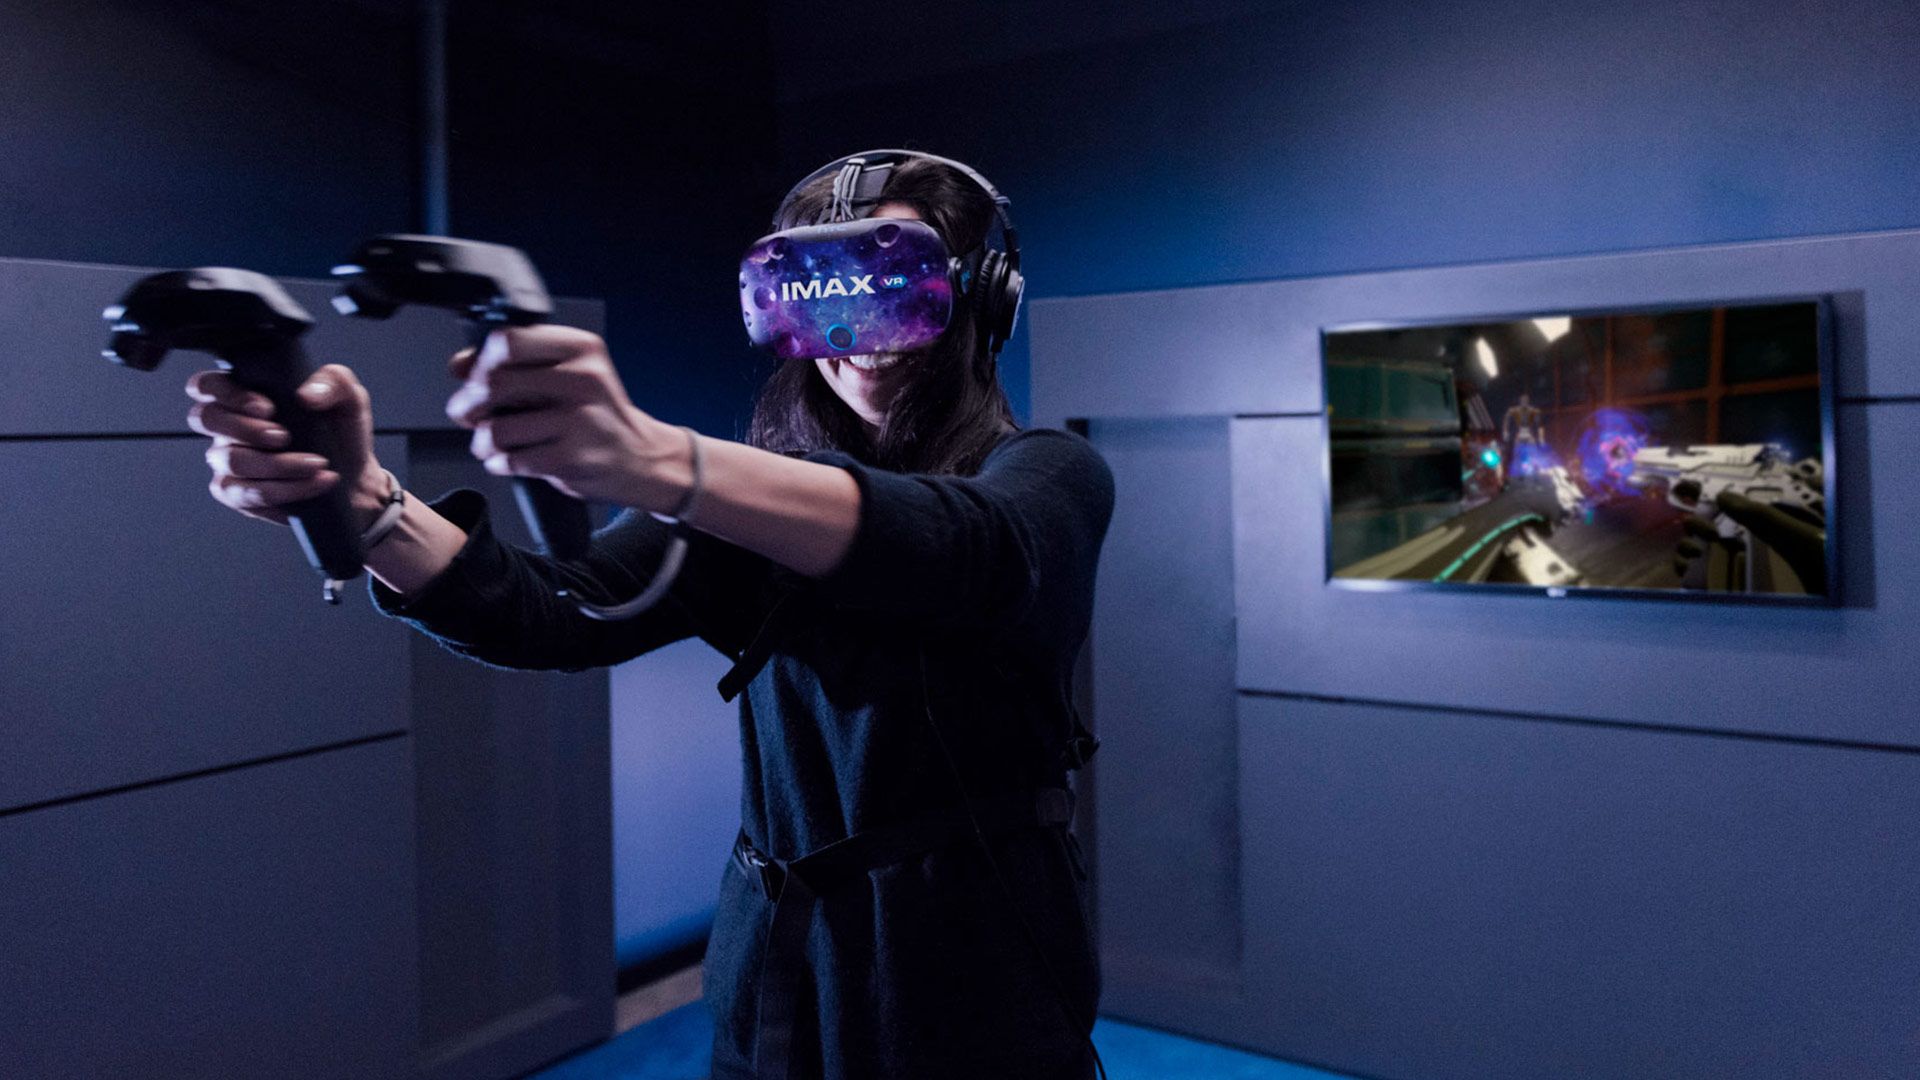 สัมผัสประสบการณ์ VR สุดมันเต็มรูปแบบกับ AIS IMAX VR จะลุยเดี่ยวกับหุ่นยนต์นักฆ่า หรือจะจับทีมยิงซอมบี้ก็มีให้เลือก